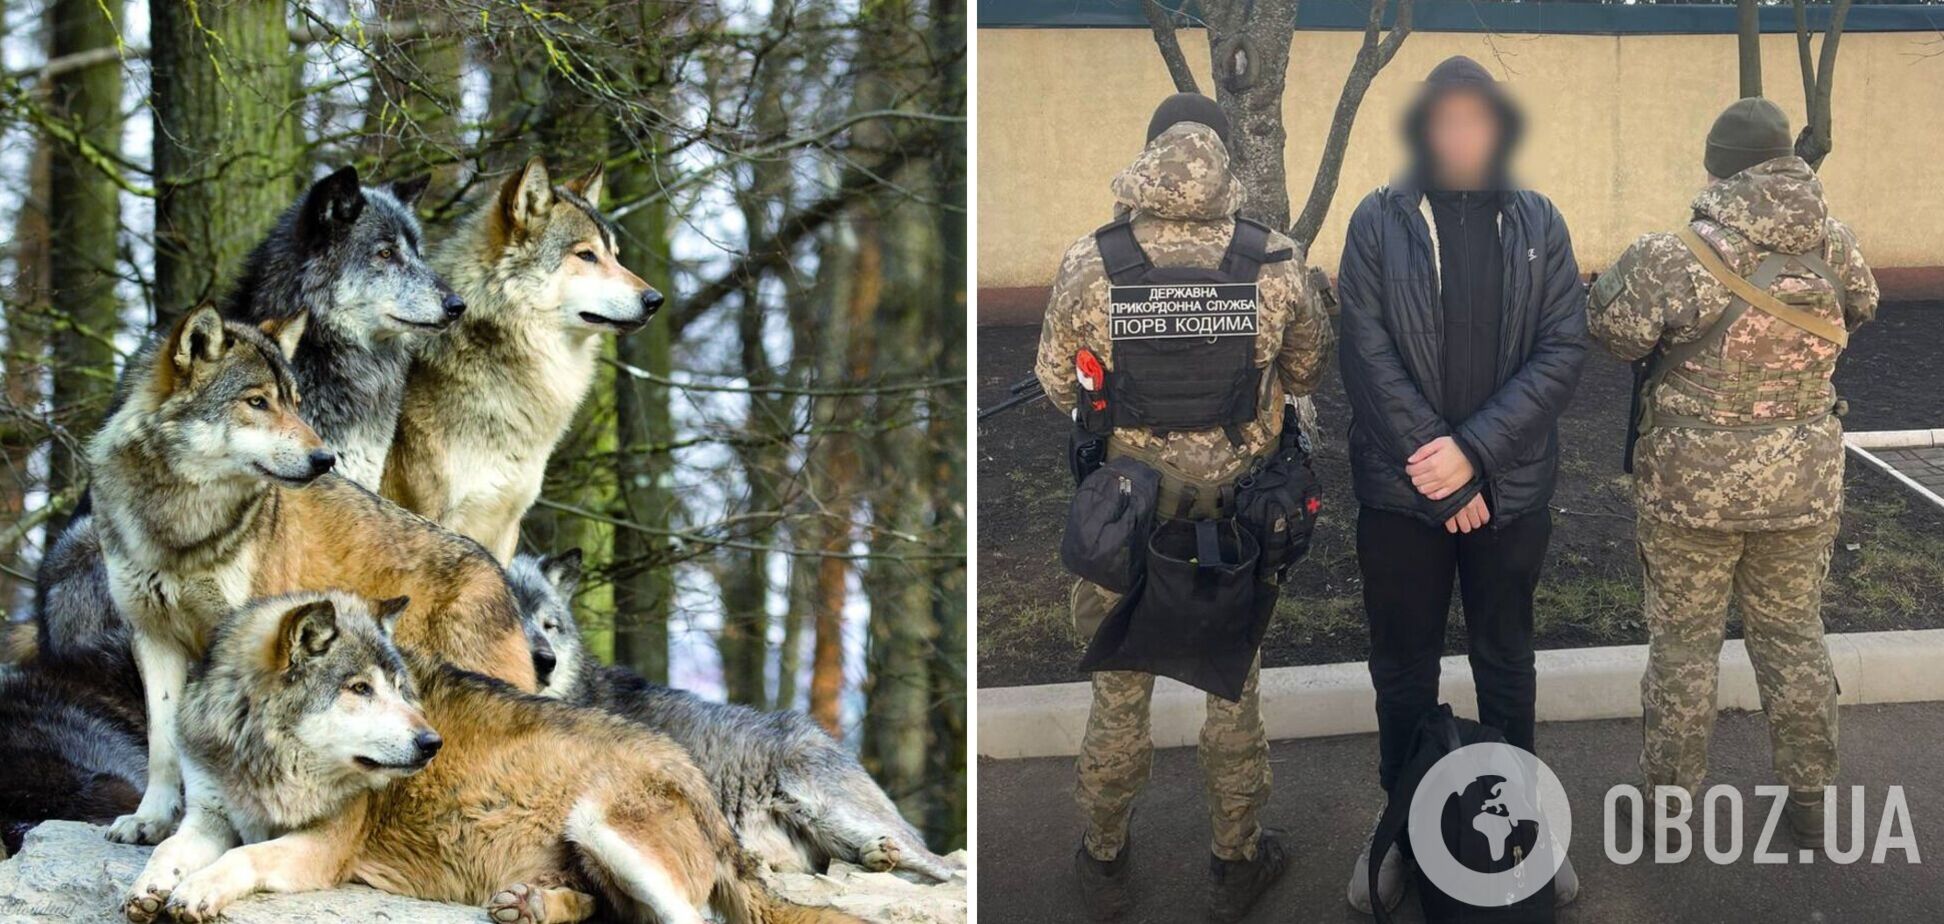 'Хотел пересечь границу, но встретил волков': в Одесской области уклонист-неудачник сдался пограничникам. Фото